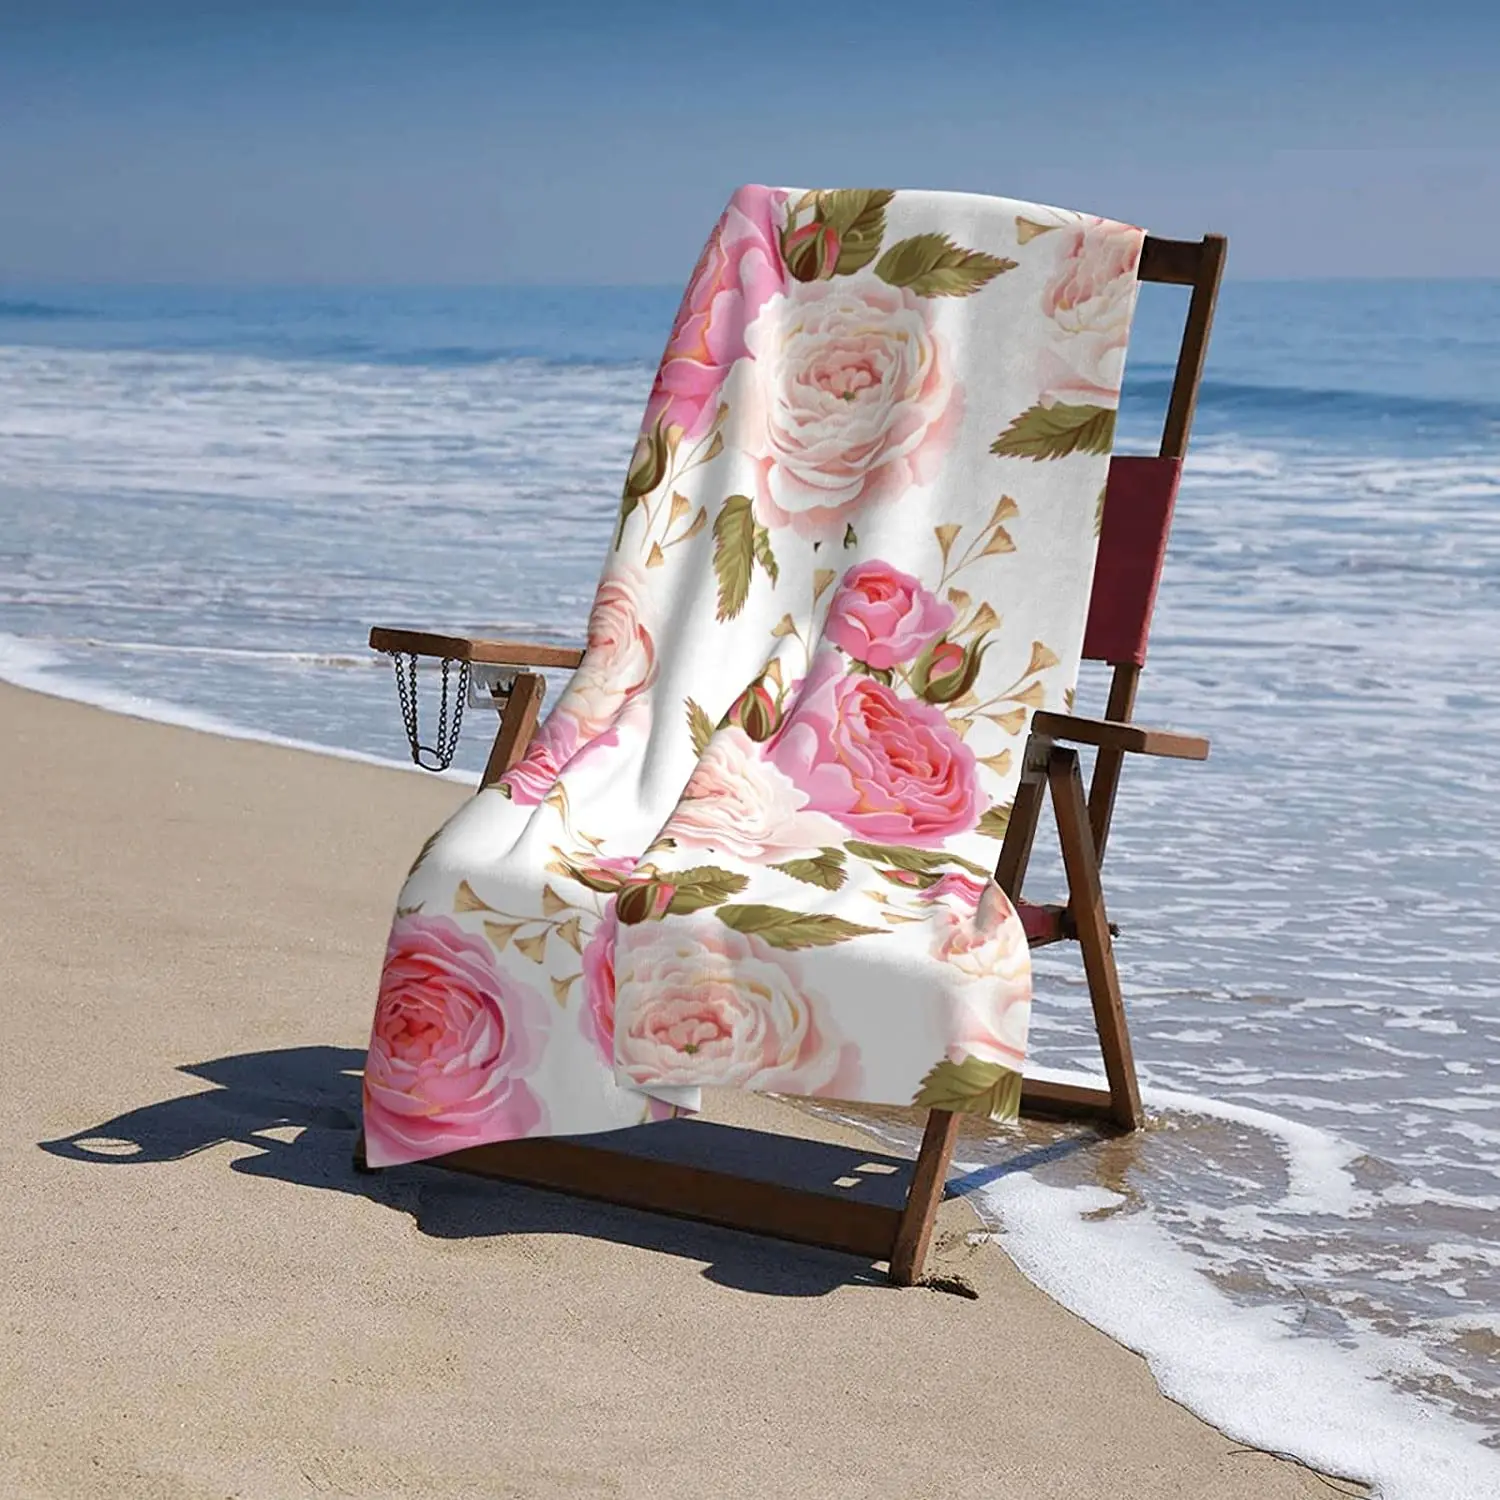 Плажна кърпа с рози, Акварел, разноцветни розови рози с листа на бял банном кърпа, защитено от пясък, Красива плажна кърпа с цветен модел . ' - ' . 5